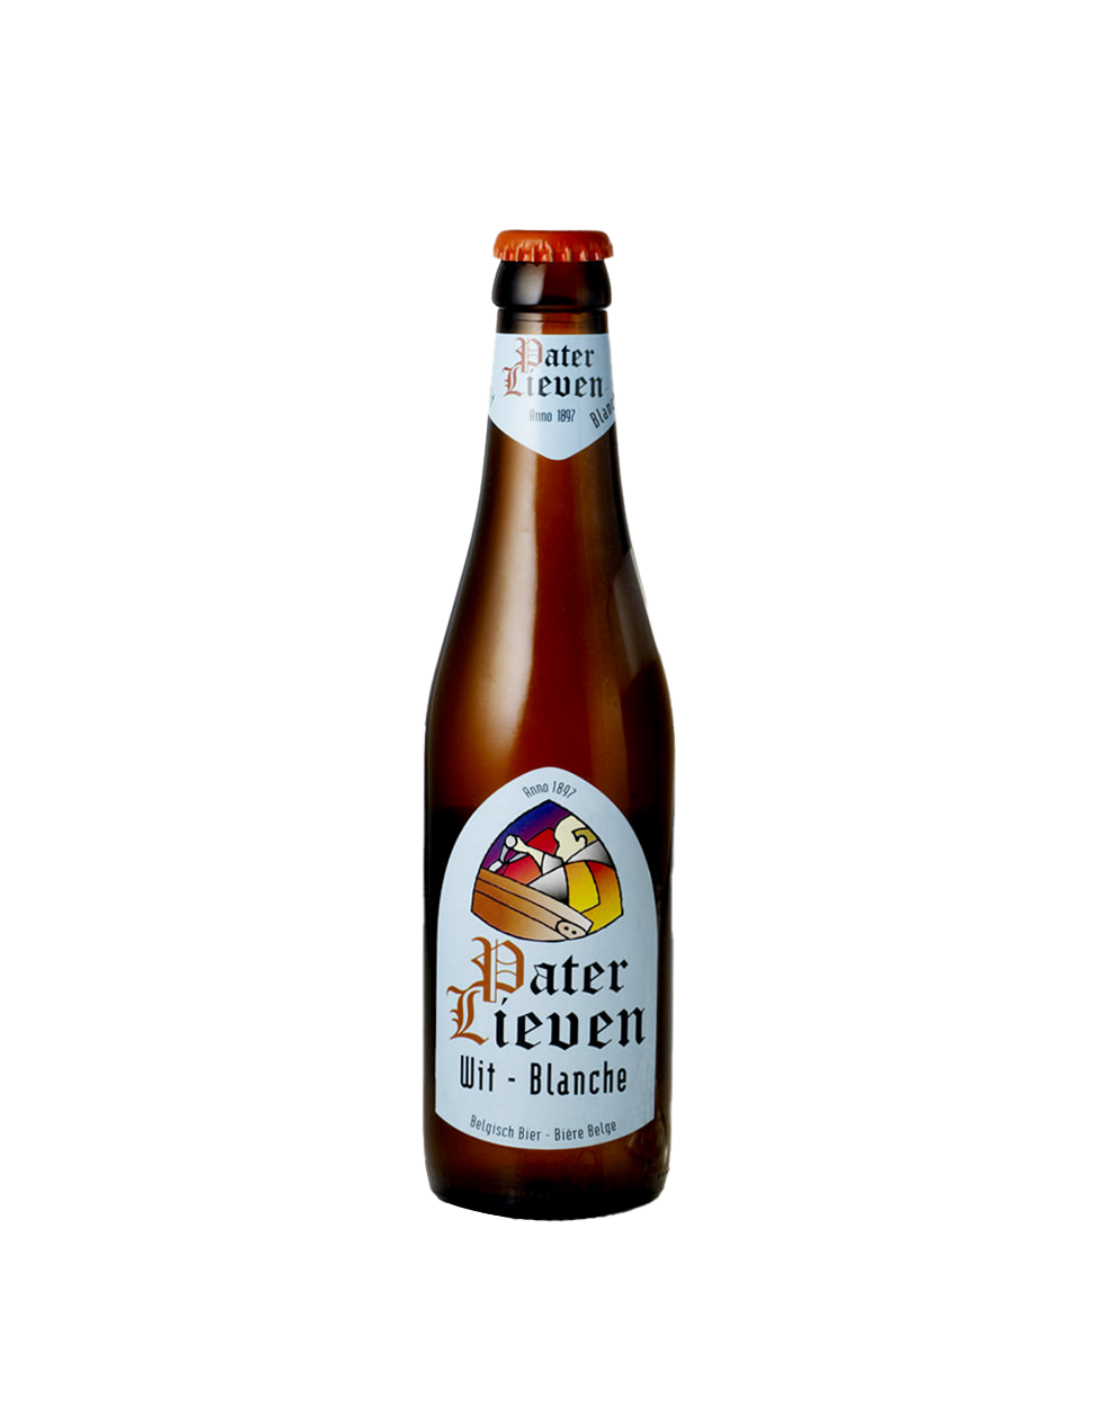 Bere alba, nefiltrata Pater Lieven Wit, 4.5% alc., 0.33L, sticla, Belgia alcooldiscount.ro